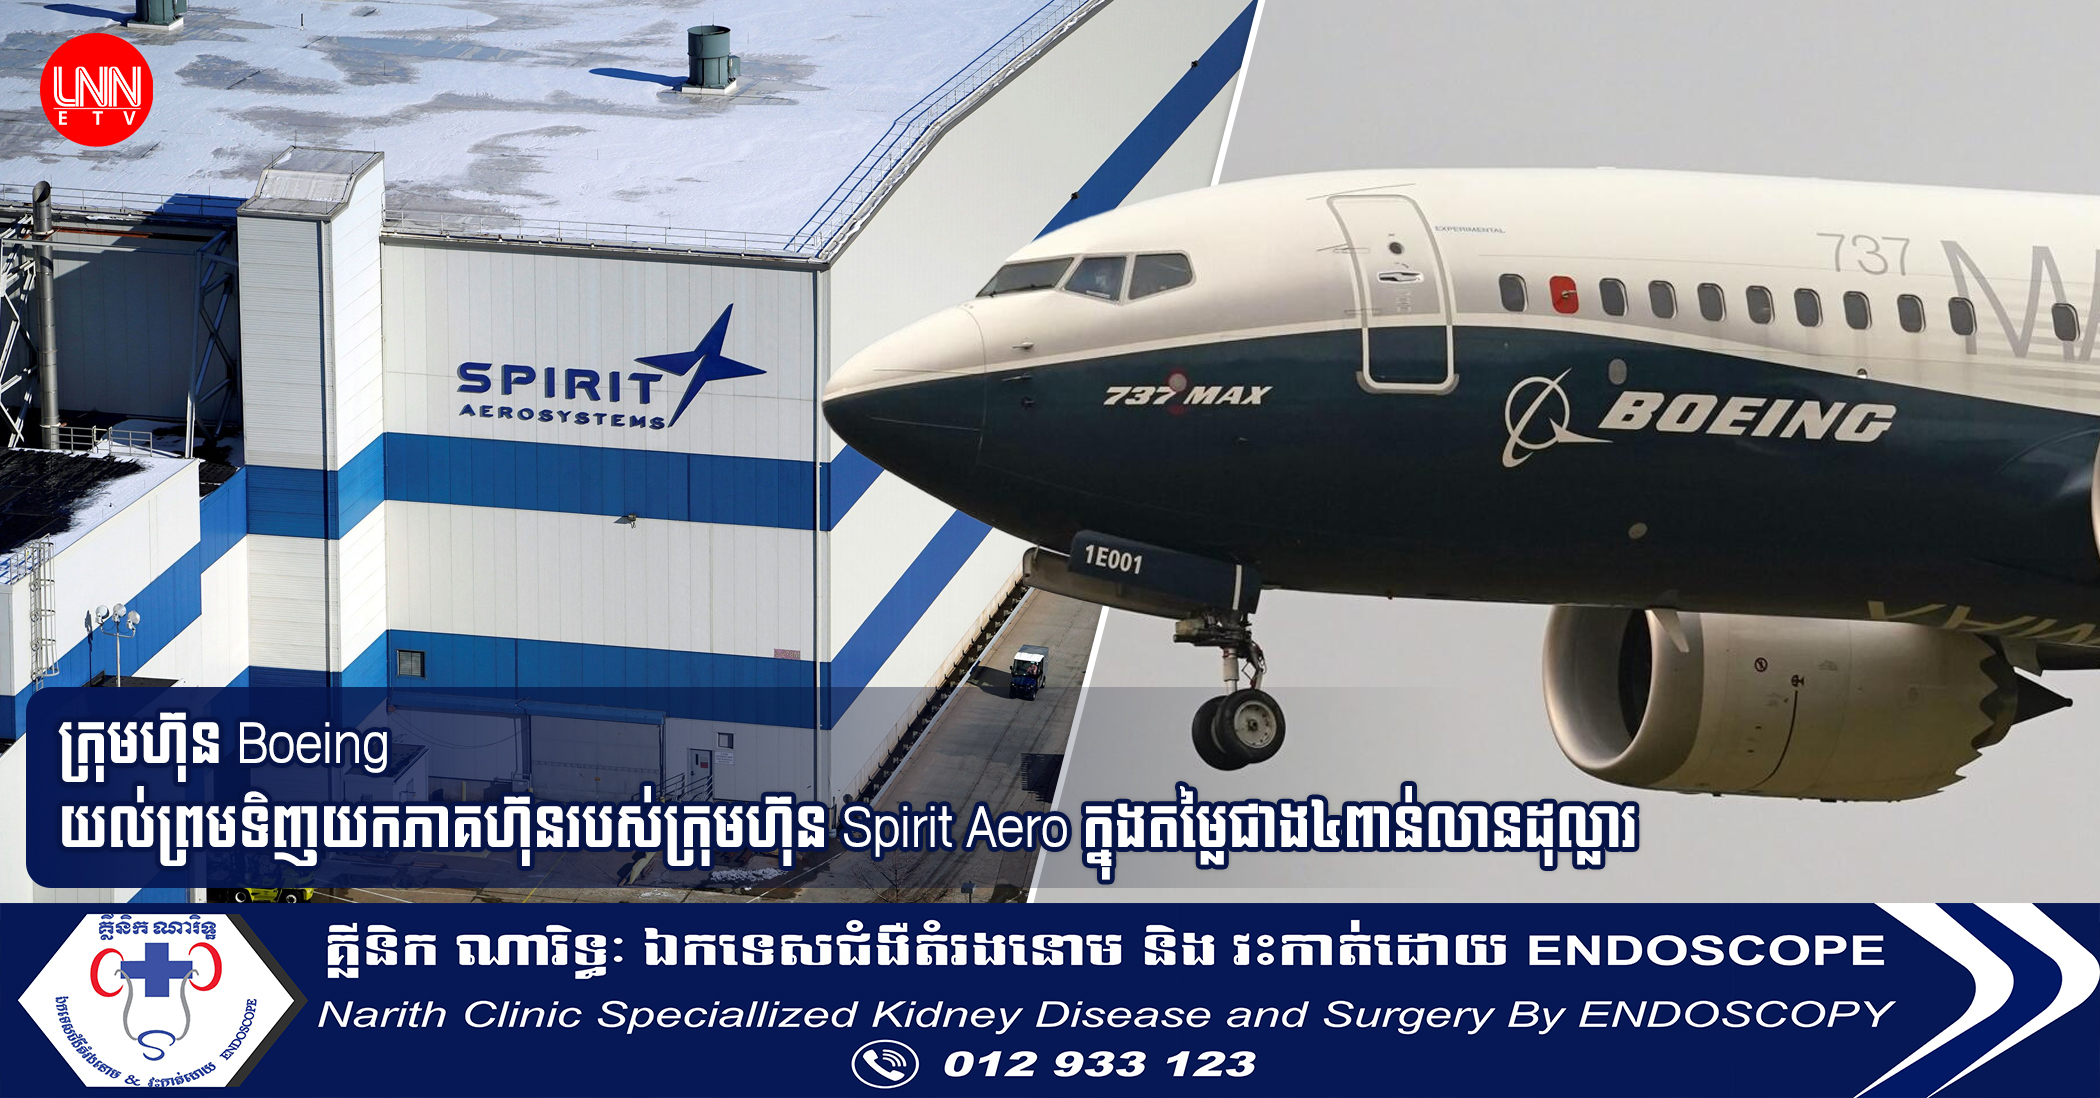 ក្រុមហ៊ុន Boeing យល់ព្រមទិញយកភាគហ៊ុនរបស់ក្រុមហ៊ុន Spirit Aero ក្នុងតម្លៃជាង៤ពាន់លានដុល្លារ